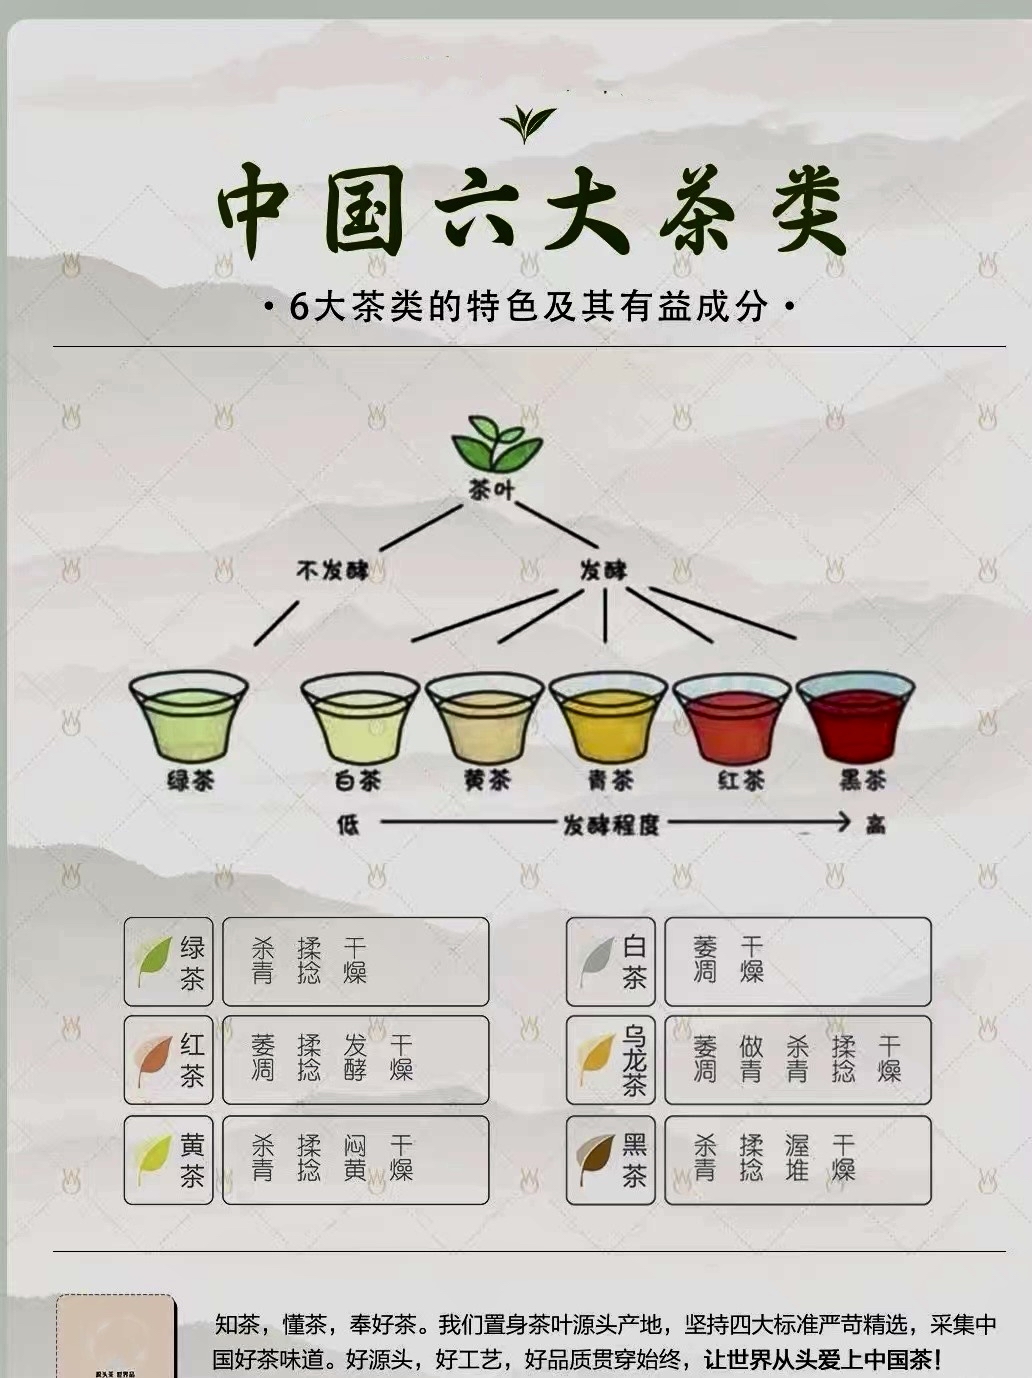 包括不发酵,发酵等程度不同的绿茶,白茶,黄茶,青茶,红茶和黑茶